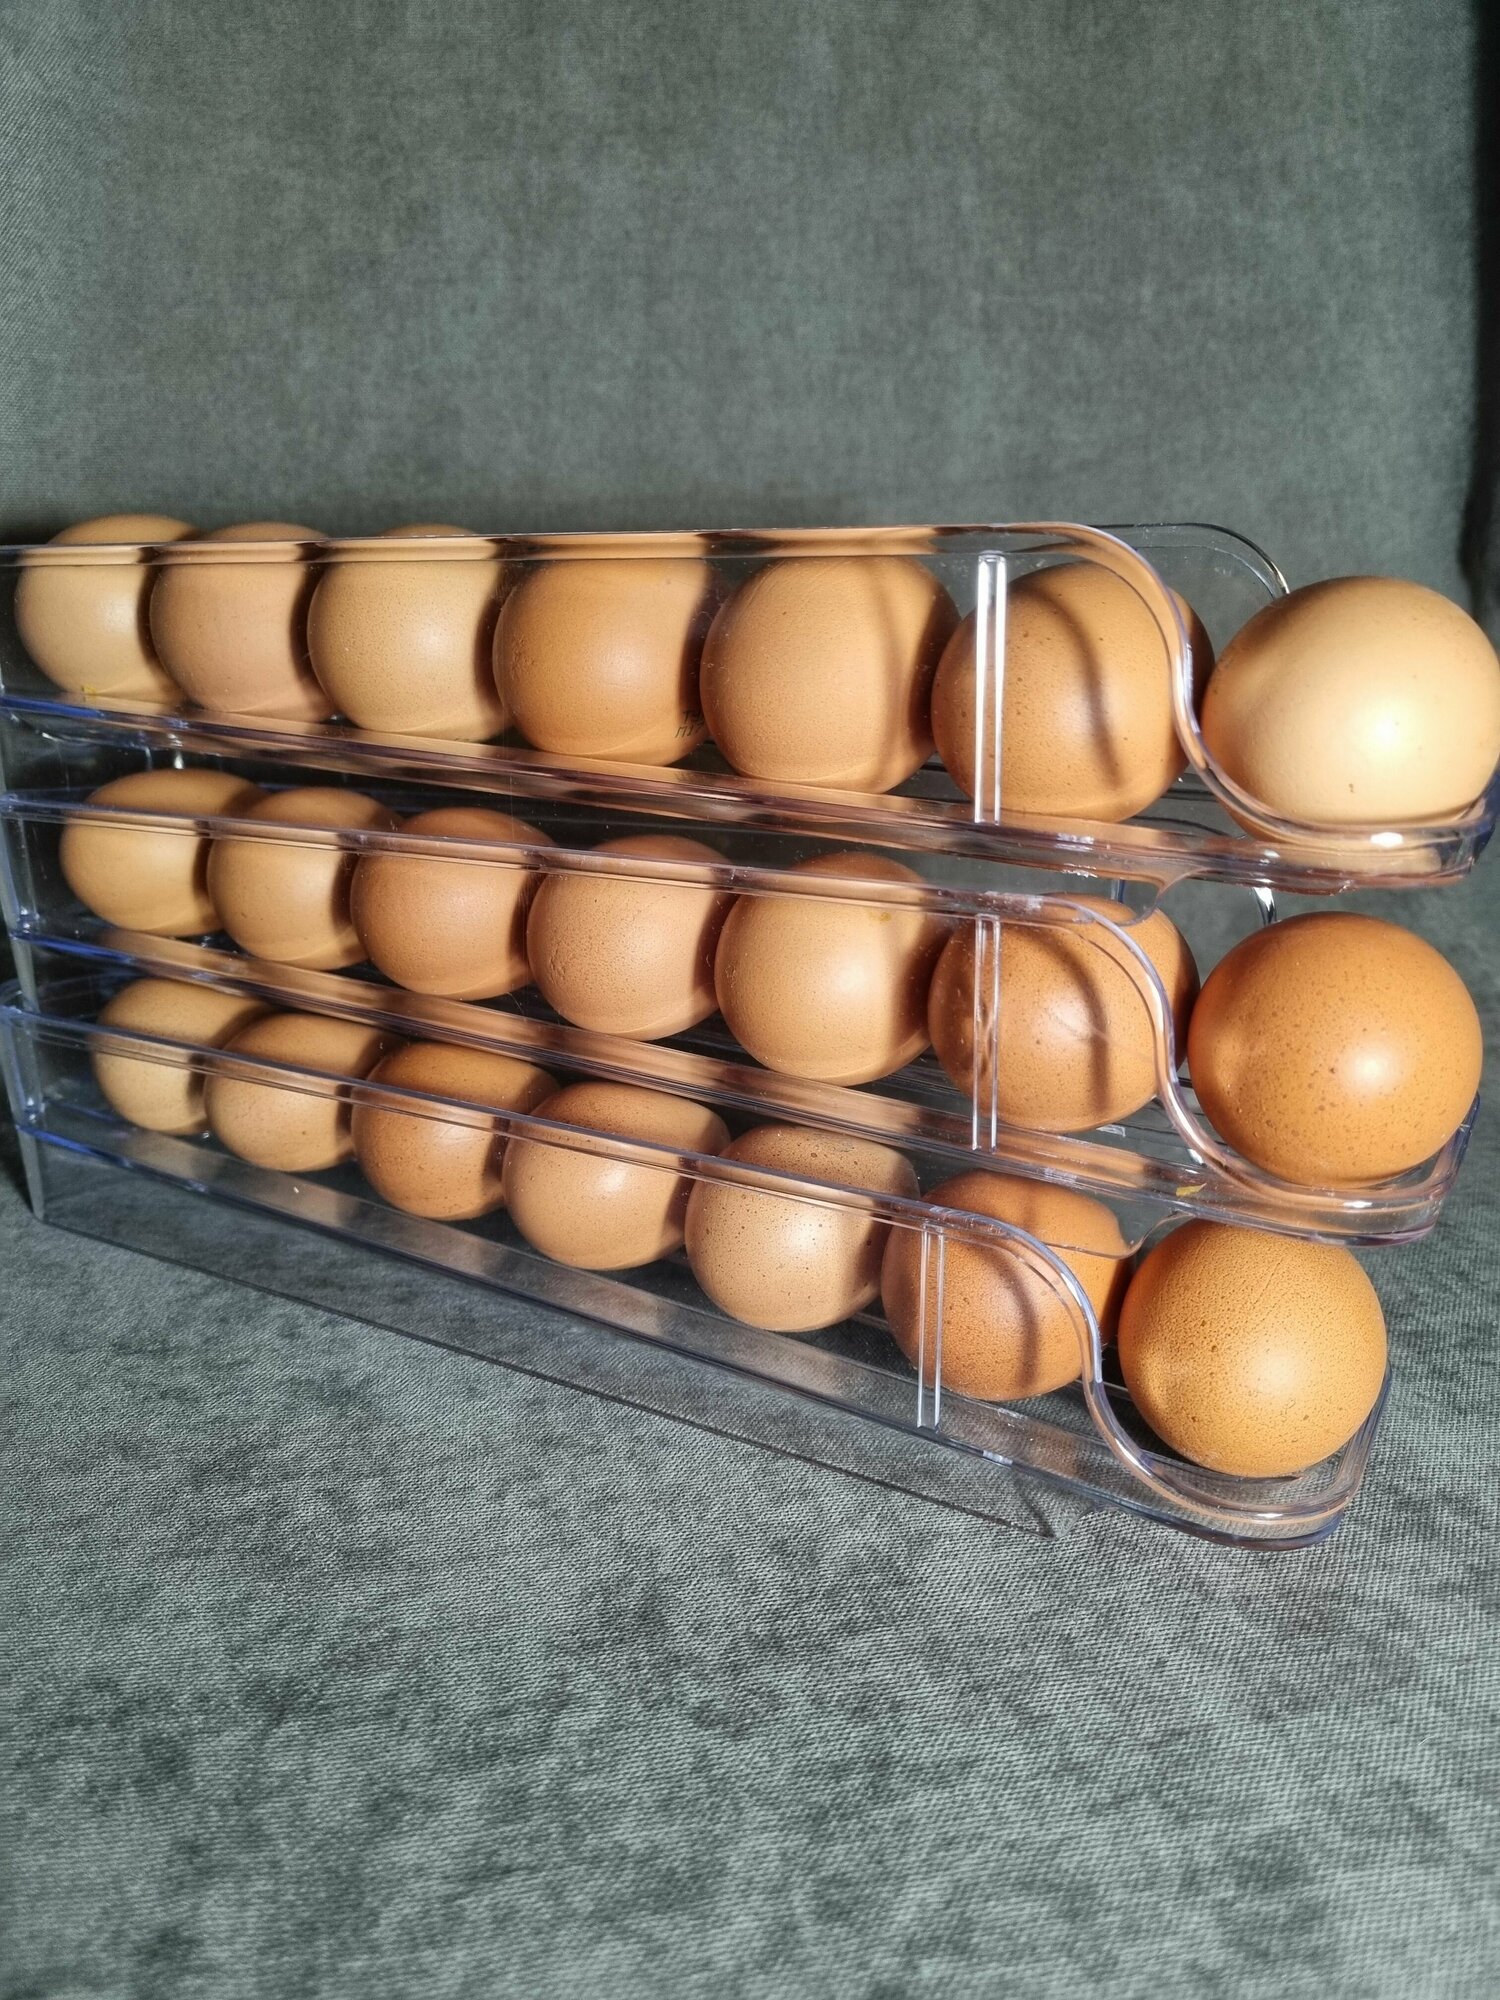 Контейнер для хранения яиц в холодильнике